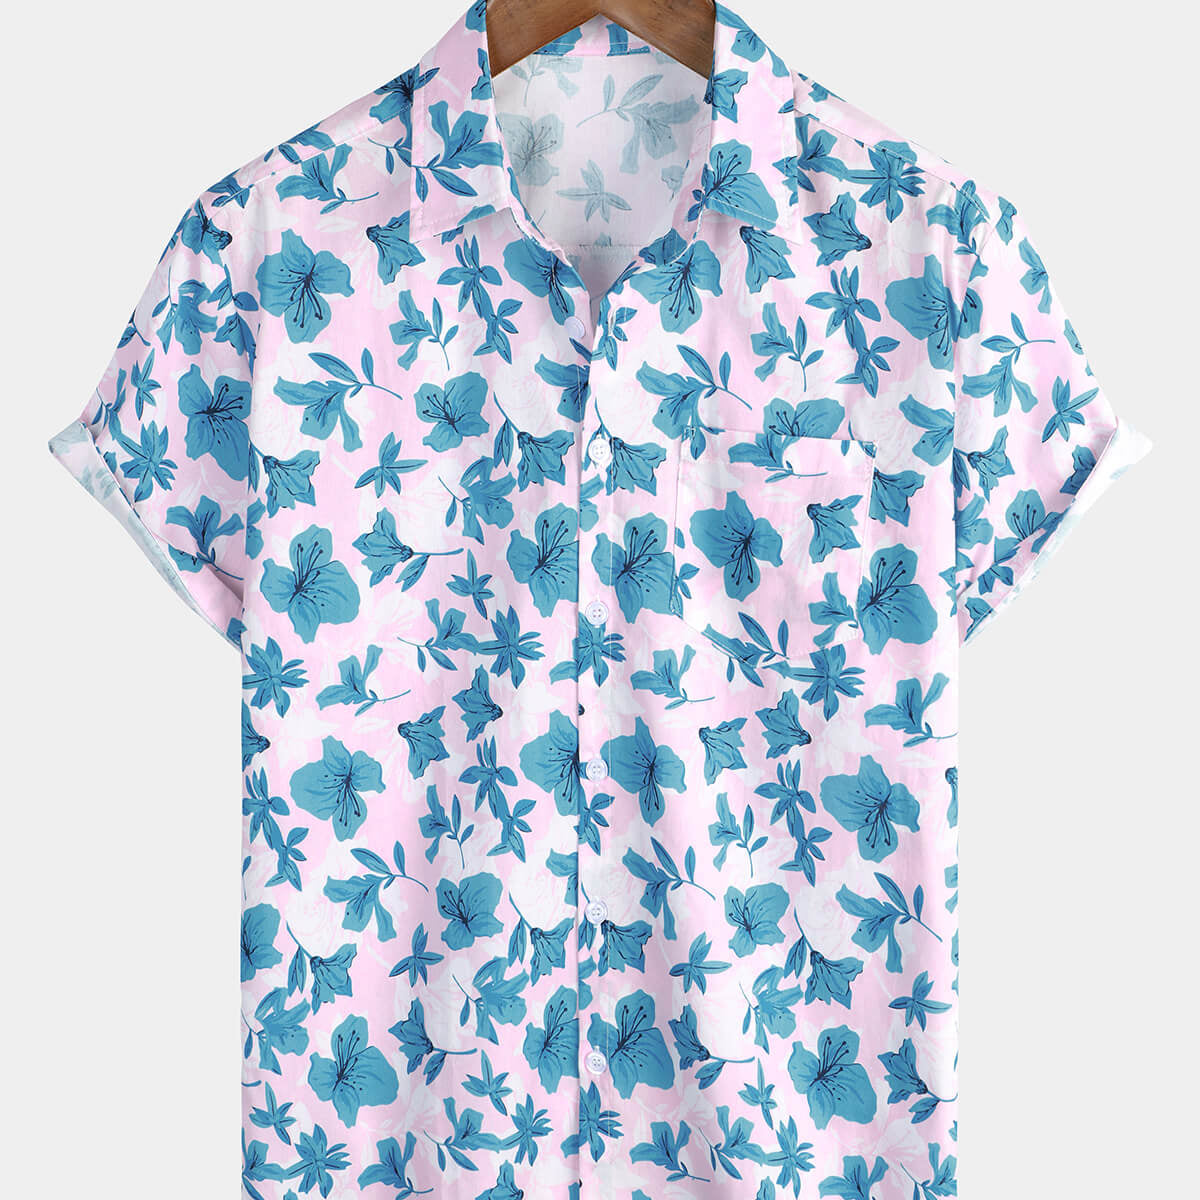 Men's Cotton Beach Floral Hawaiian Summer Shirt